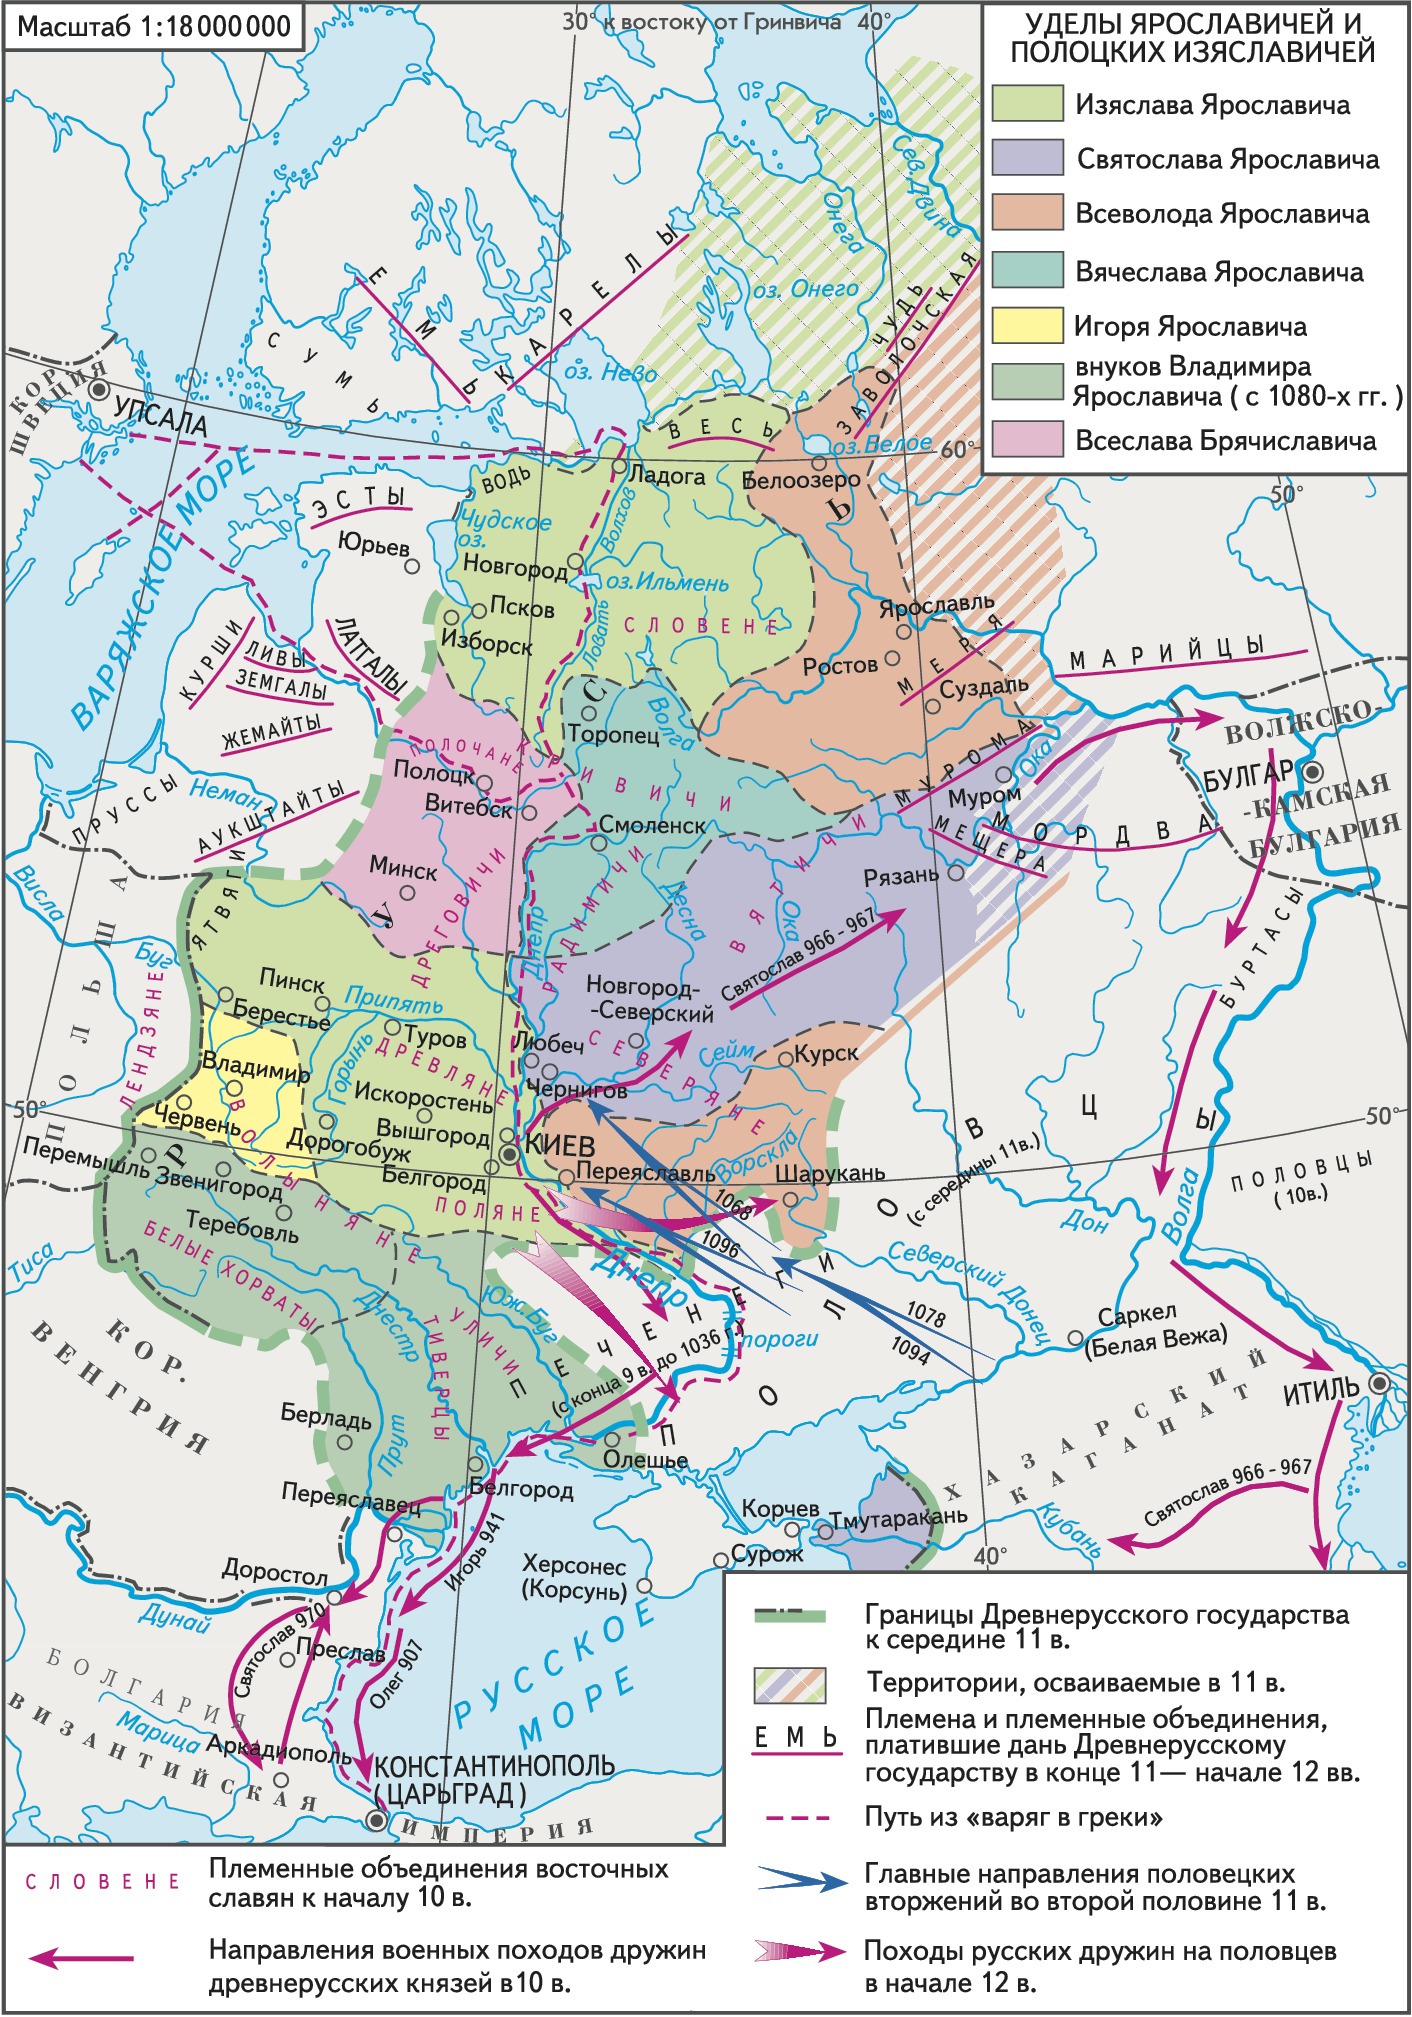 Образование государства Киевской Руси в IХ веке